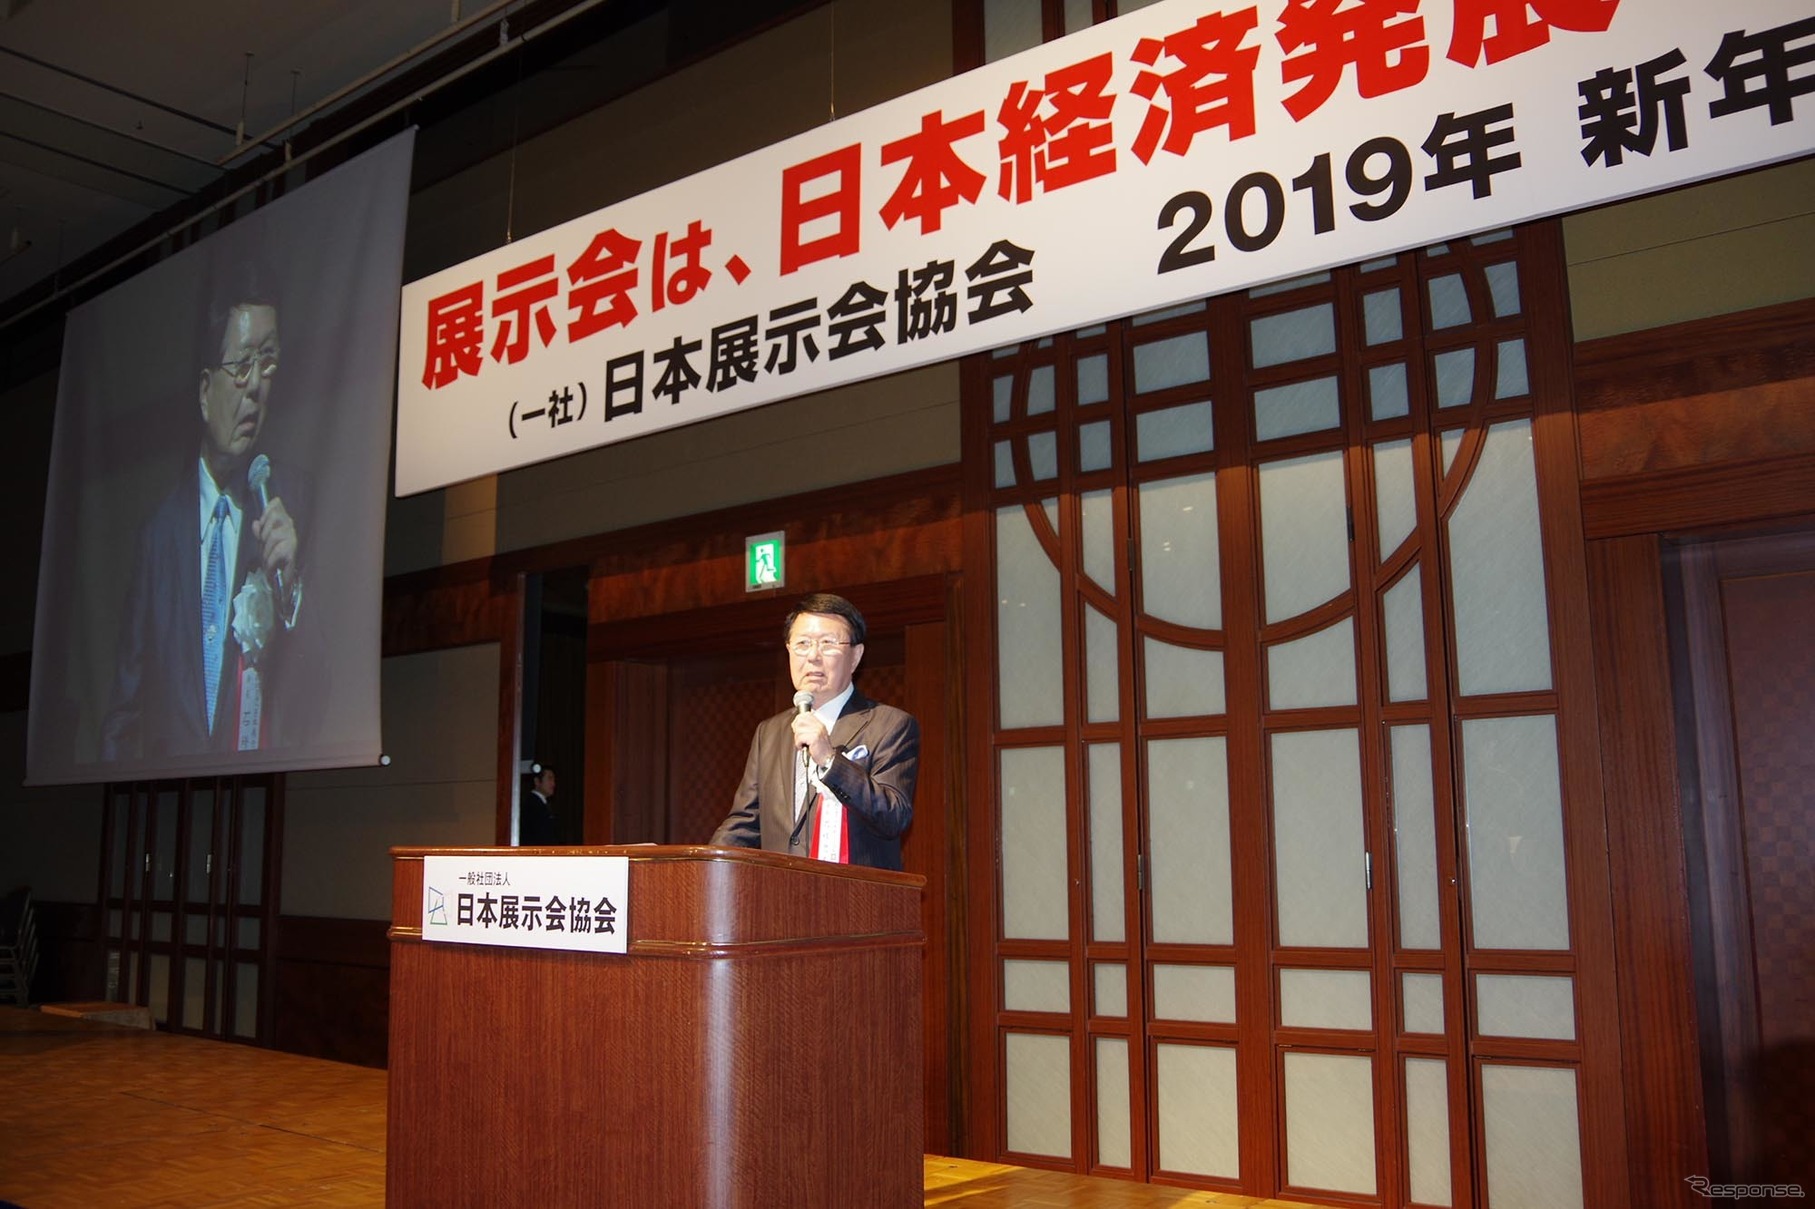 日本展示会協会が9日、2019年新年会を開催。石積会長はオリパラ展示会場問題について成果を報告した